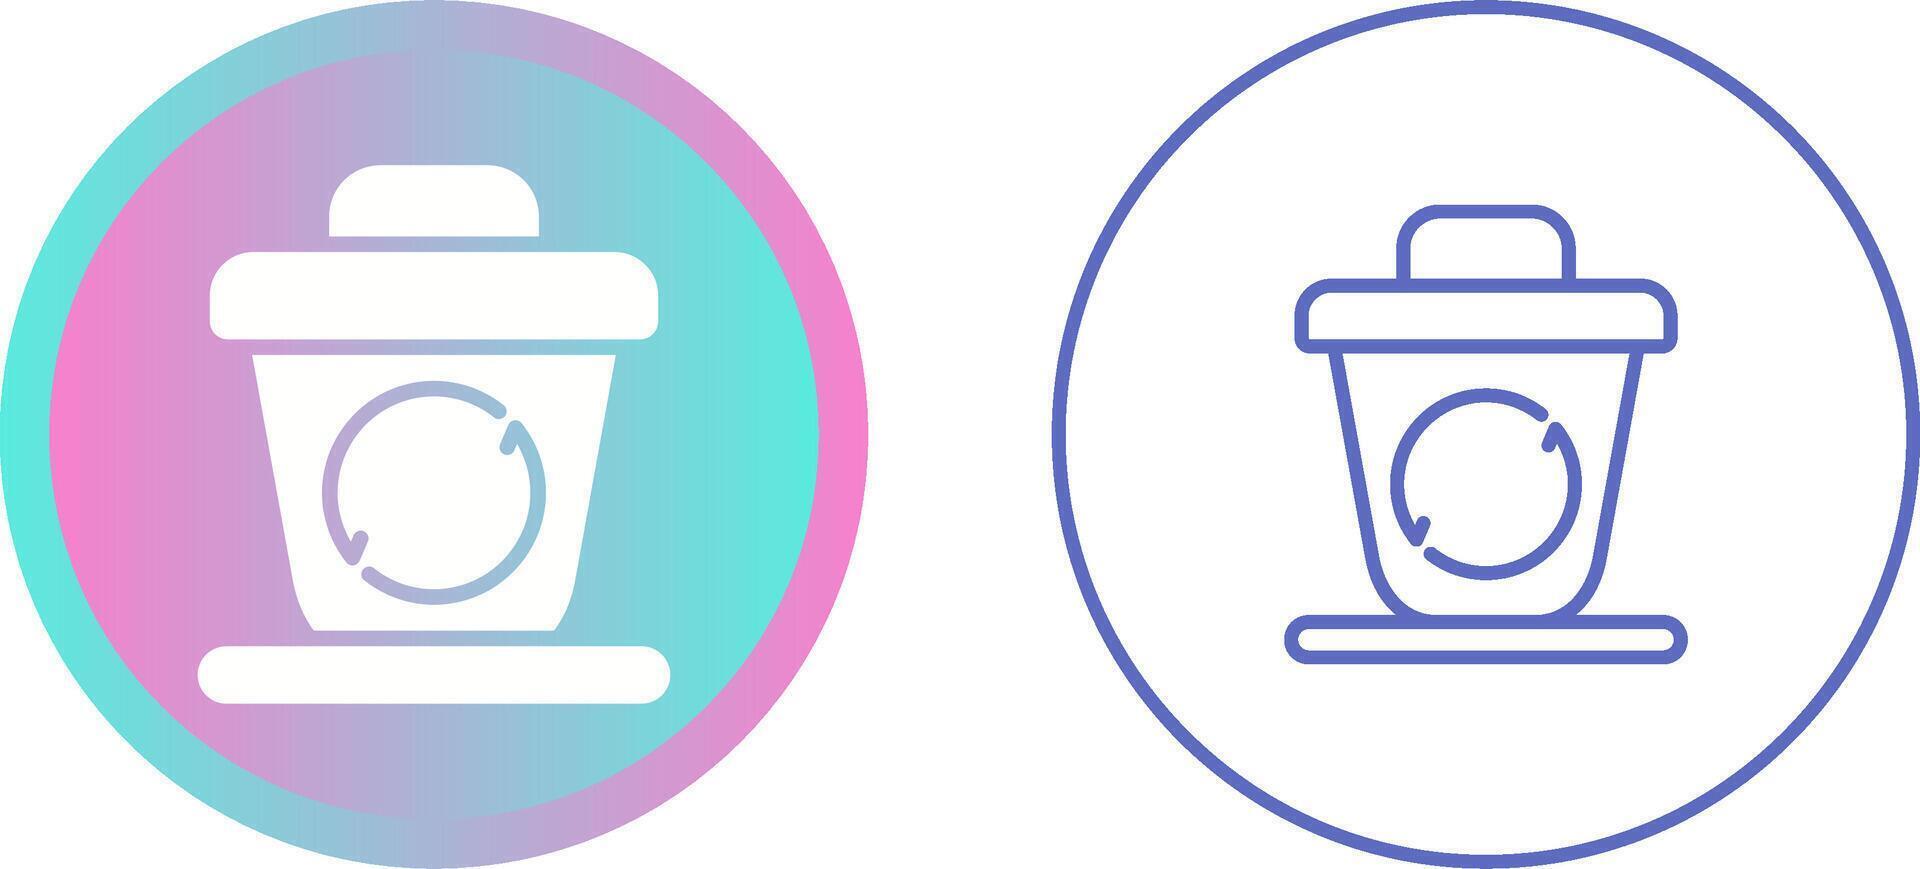 Recycling Behälter Vektor Symbol